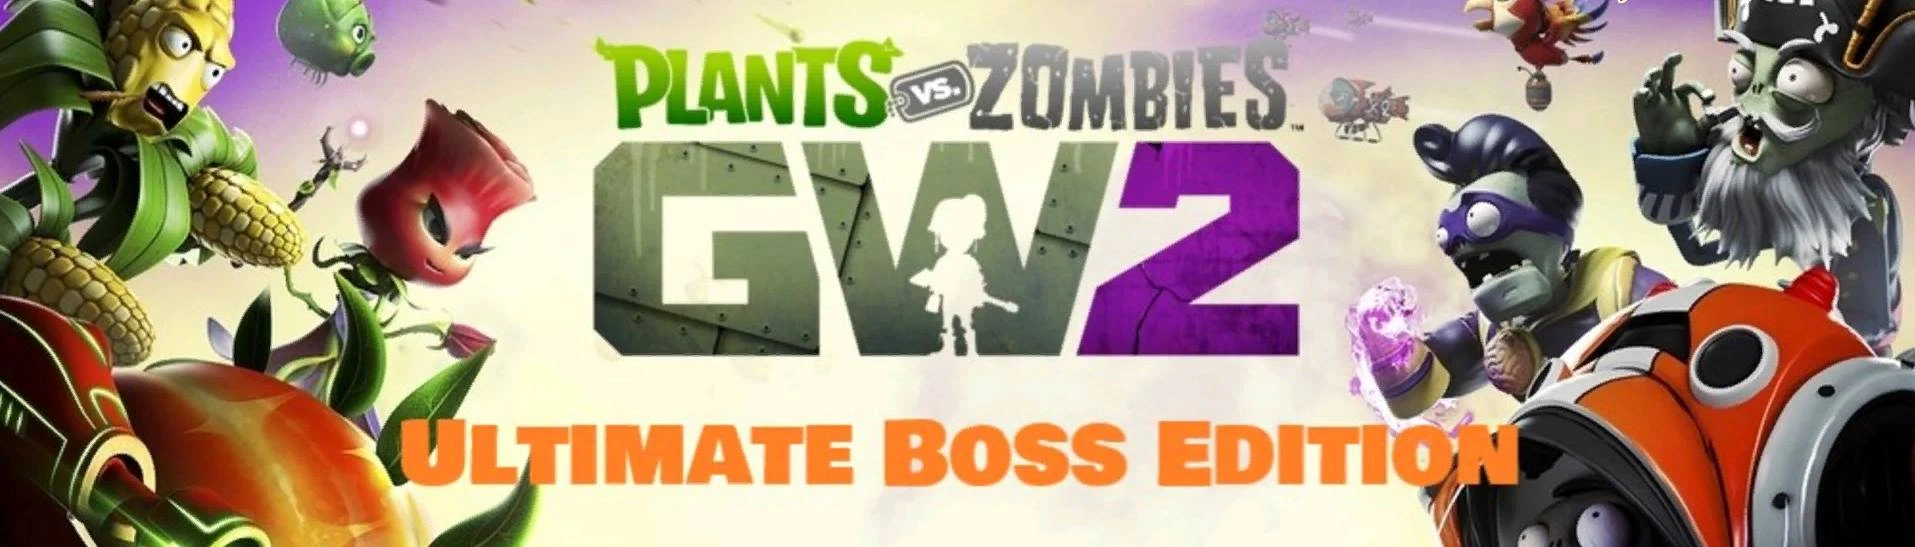 Big Stump, Plants vs. Zombies Wiki